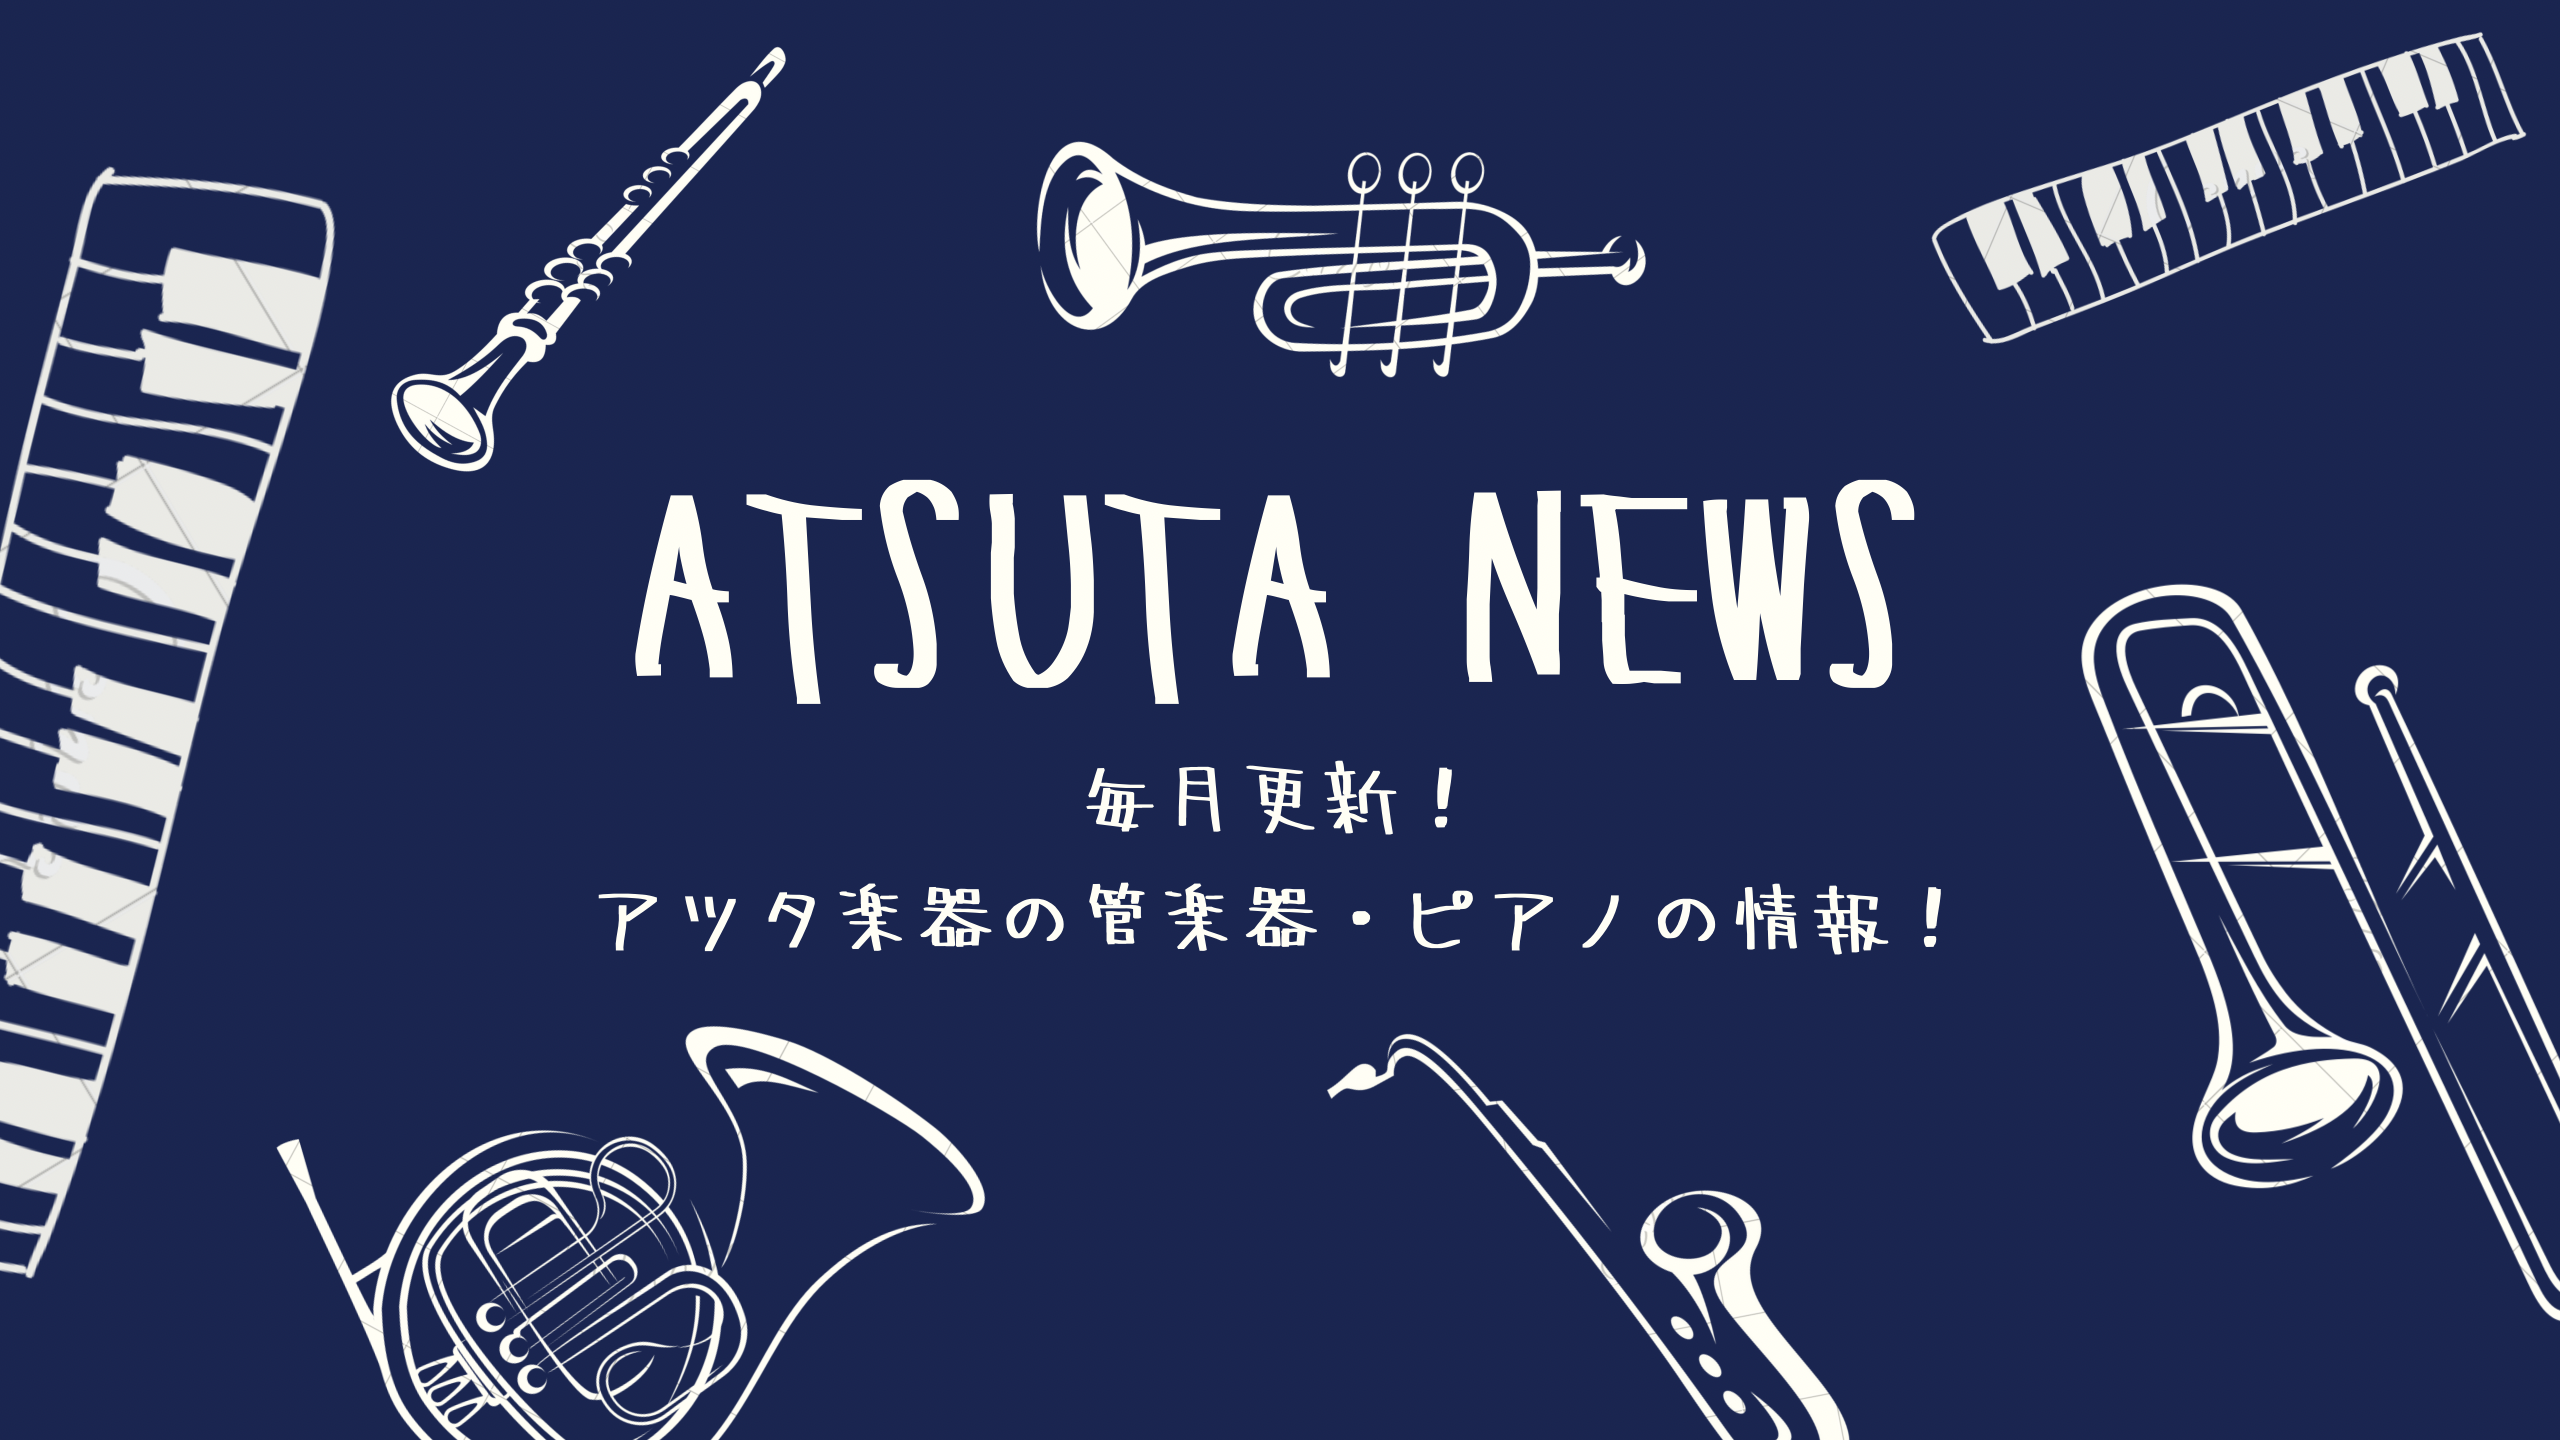 ATSUTA NEWS Vol.11